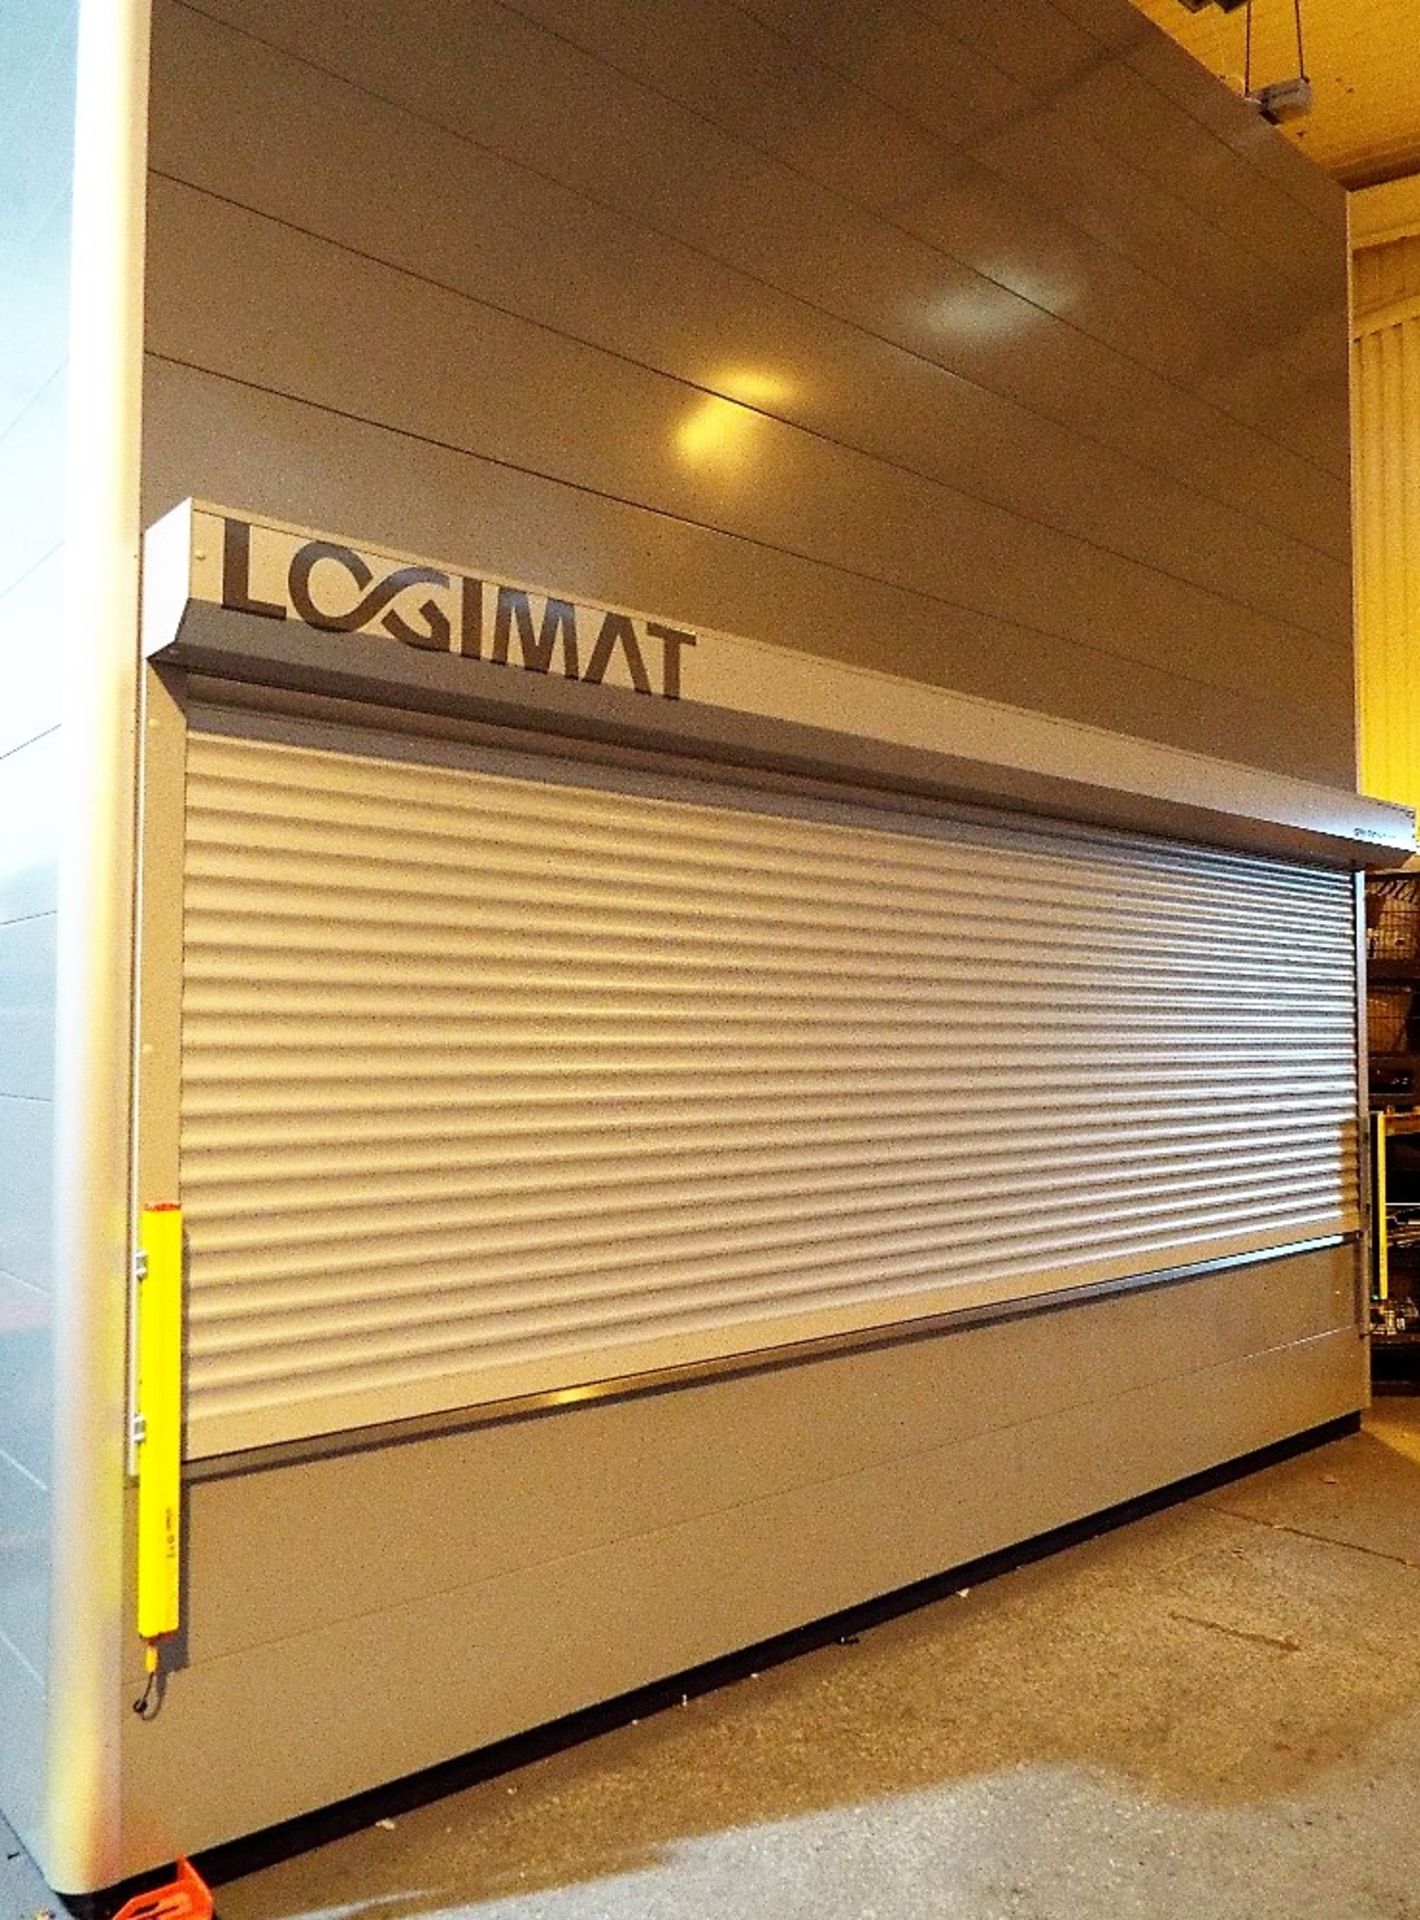 SSI Schaefer Logimat Type HL Storage Lift. - Image 19 of 20